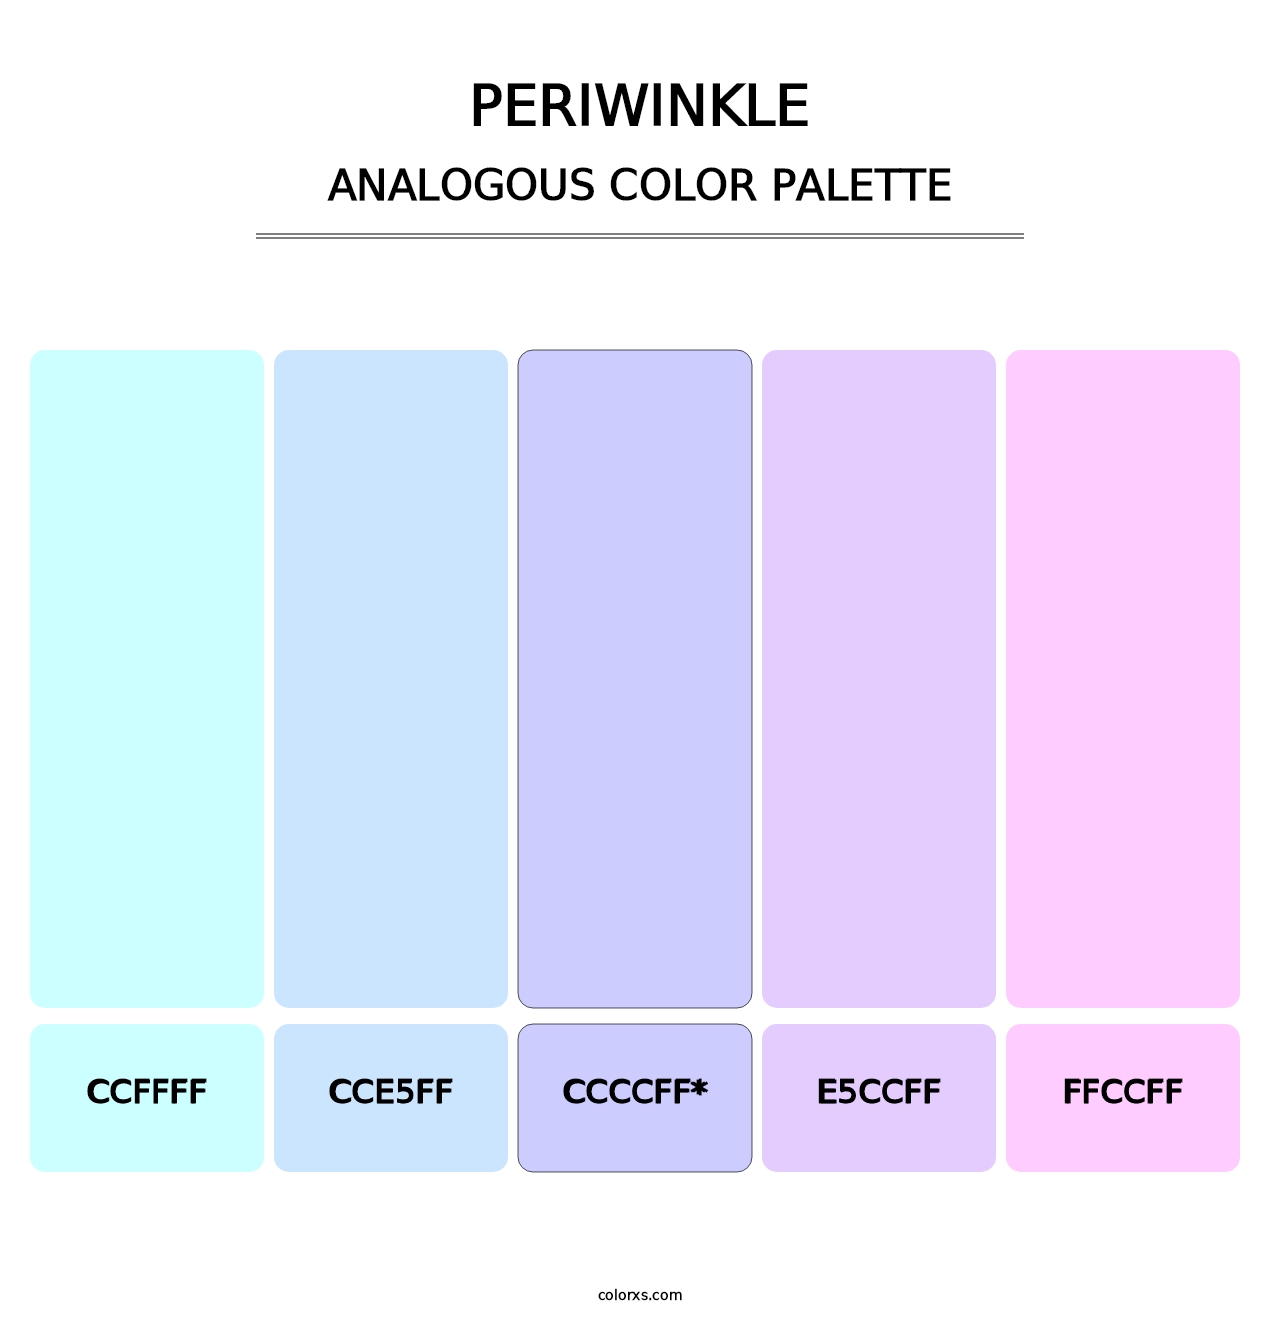 Periwinkle - Analogous Color Palette